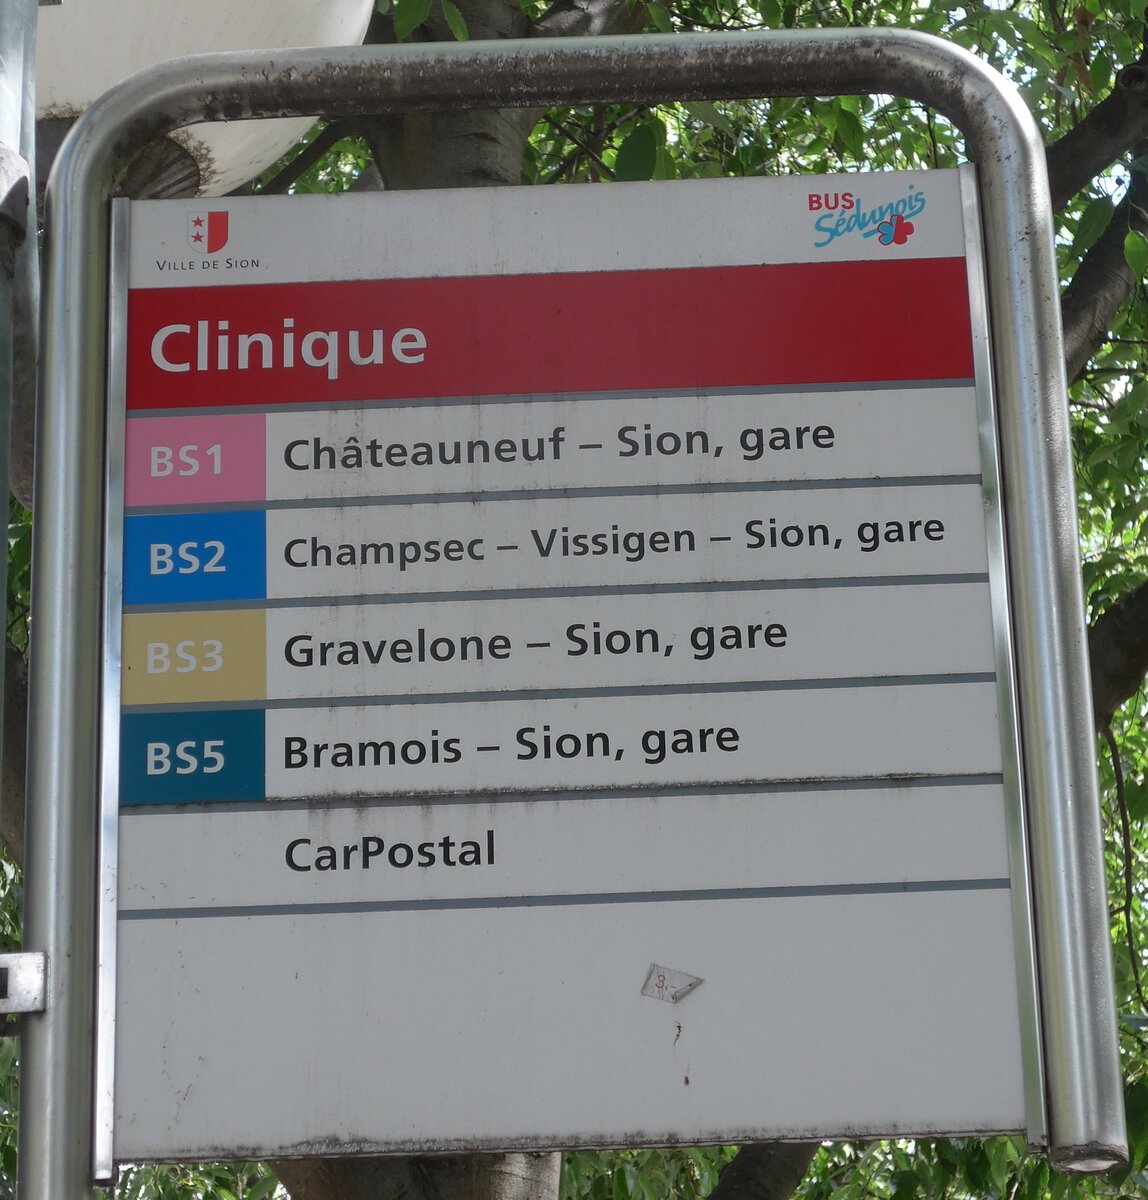 (172'549) - BUS Sdunois-Haltestellenschild - Sion, Clinique - am 26. Juni 2016